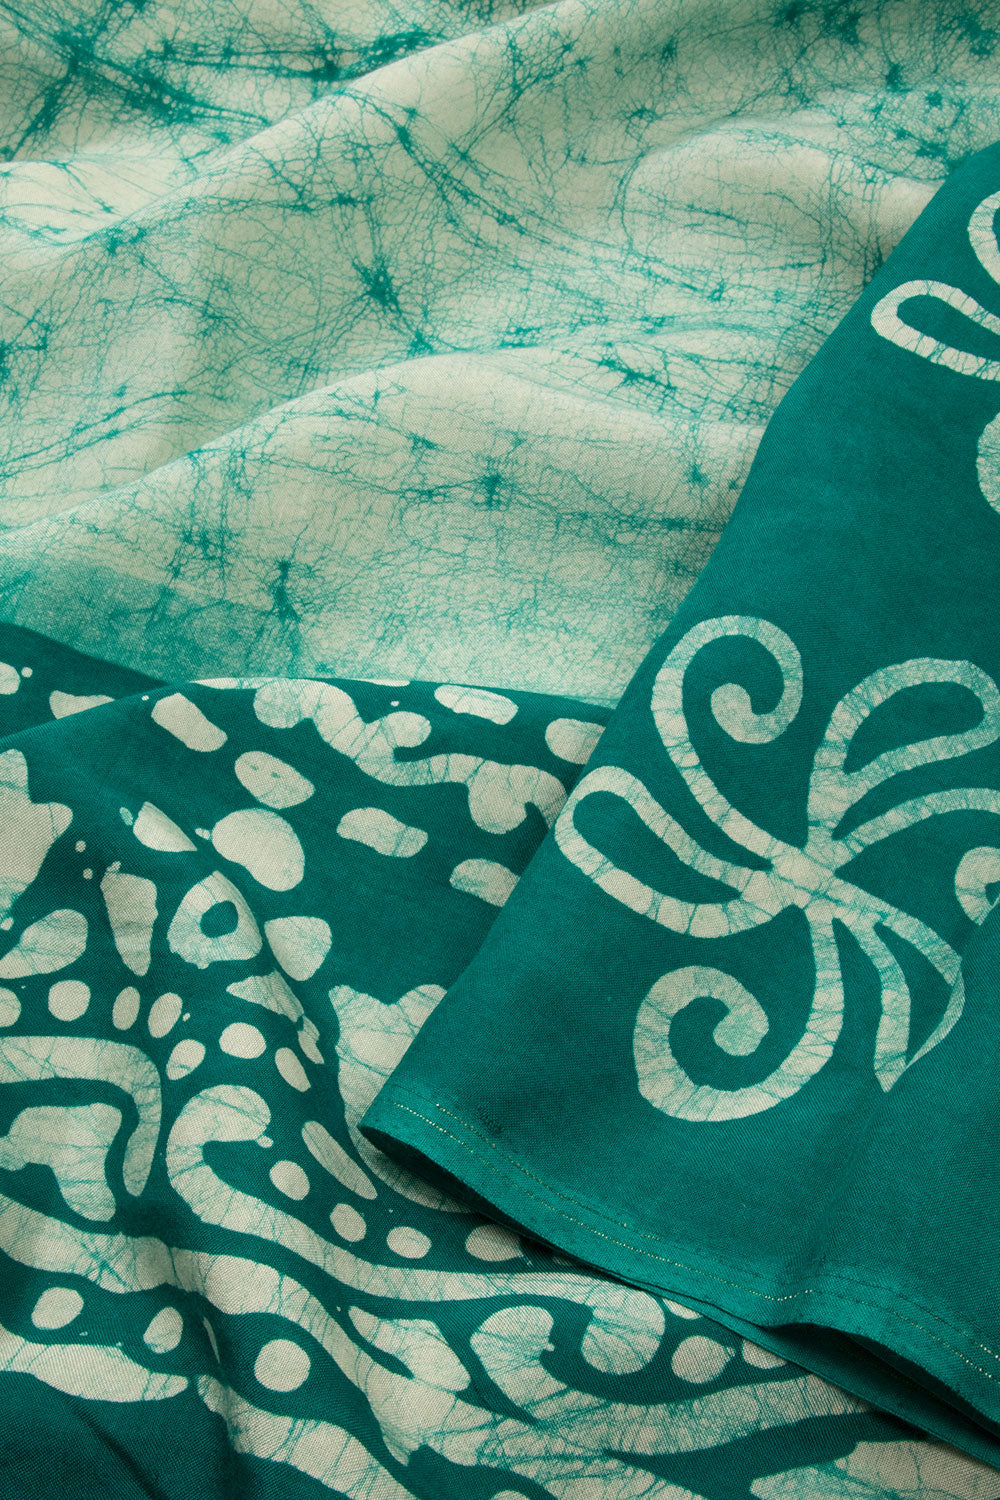 Off White Batik Printed  Muslin Silk Saree - Avishya